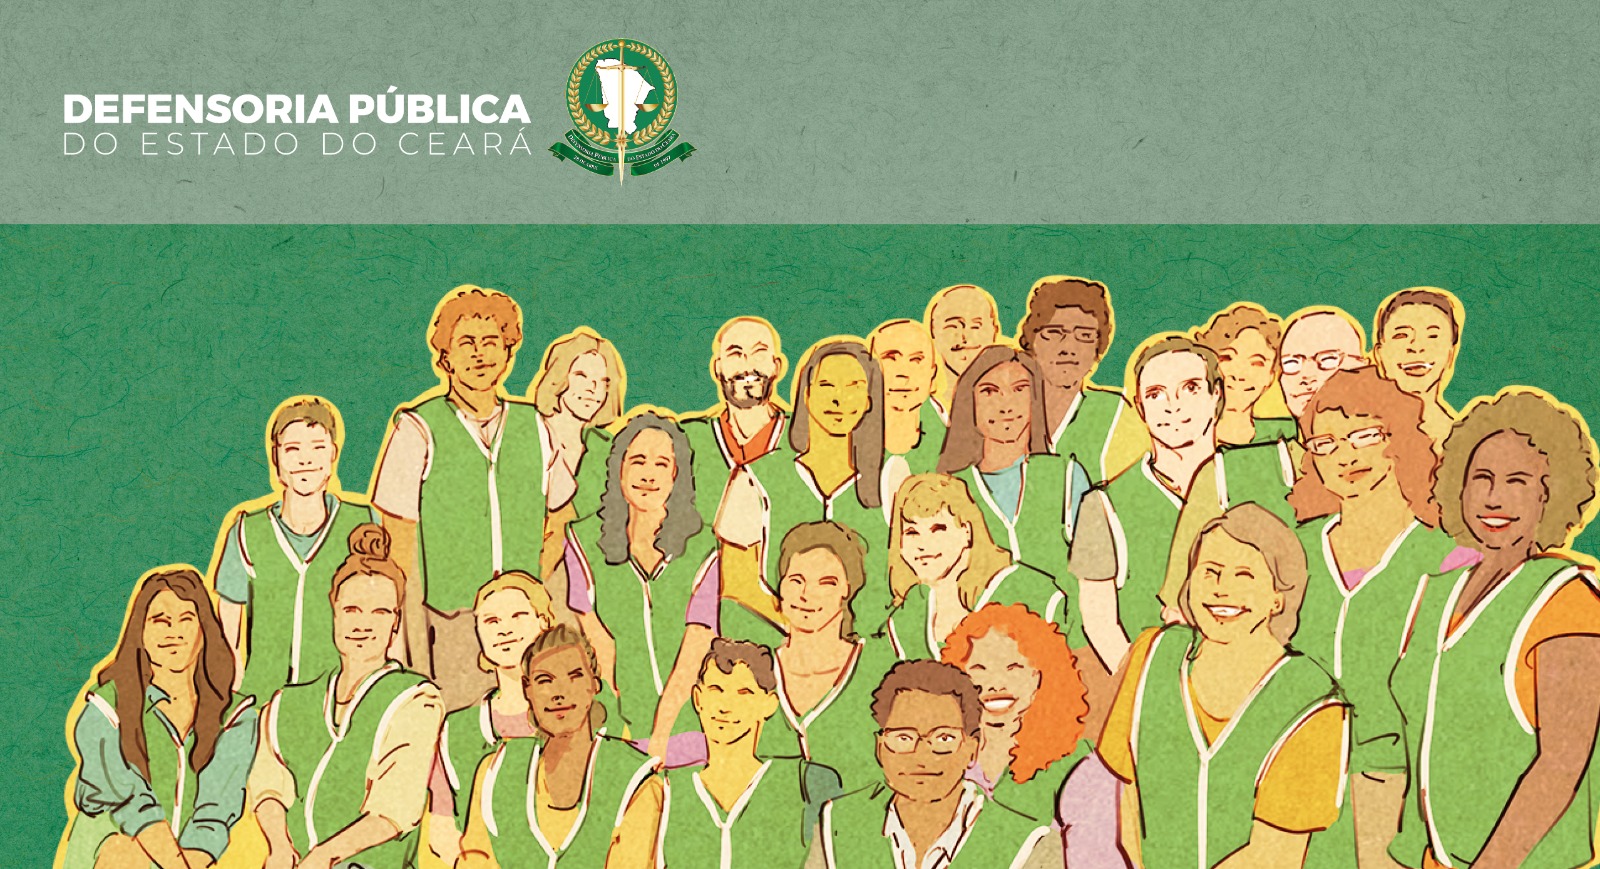 Defensoria dá posse aos novos 26 defensores e defensoras do Ceará nesta terça-feira (14.11)